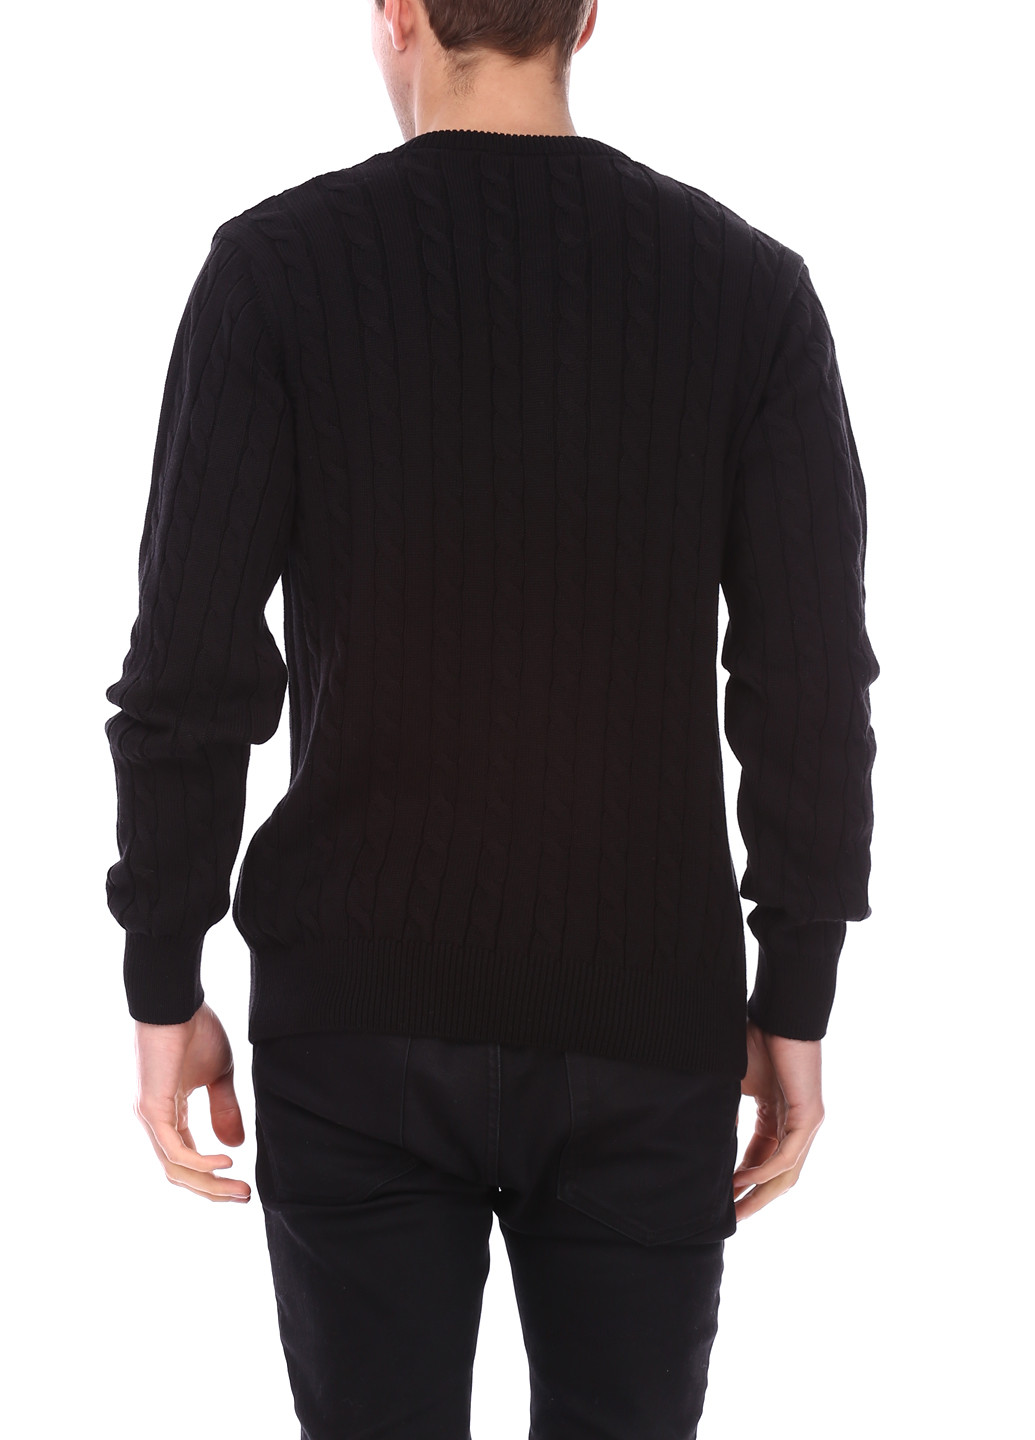 Черный демисезонный пуловер пуловер Le Gutti